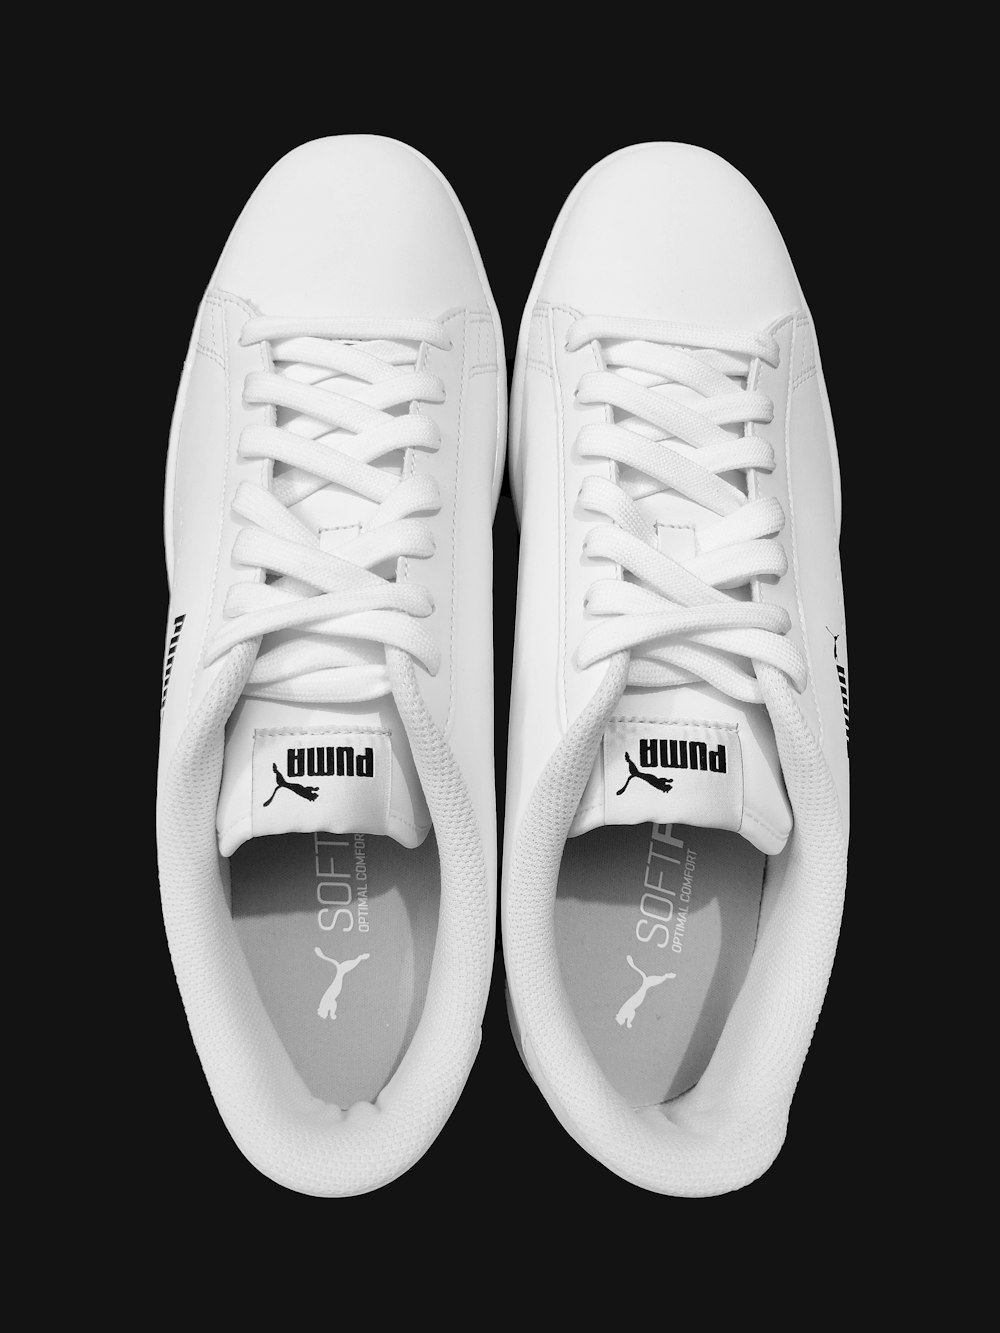 white adidas yeezy boost 350 photo – Free Grey Image on Unsplash